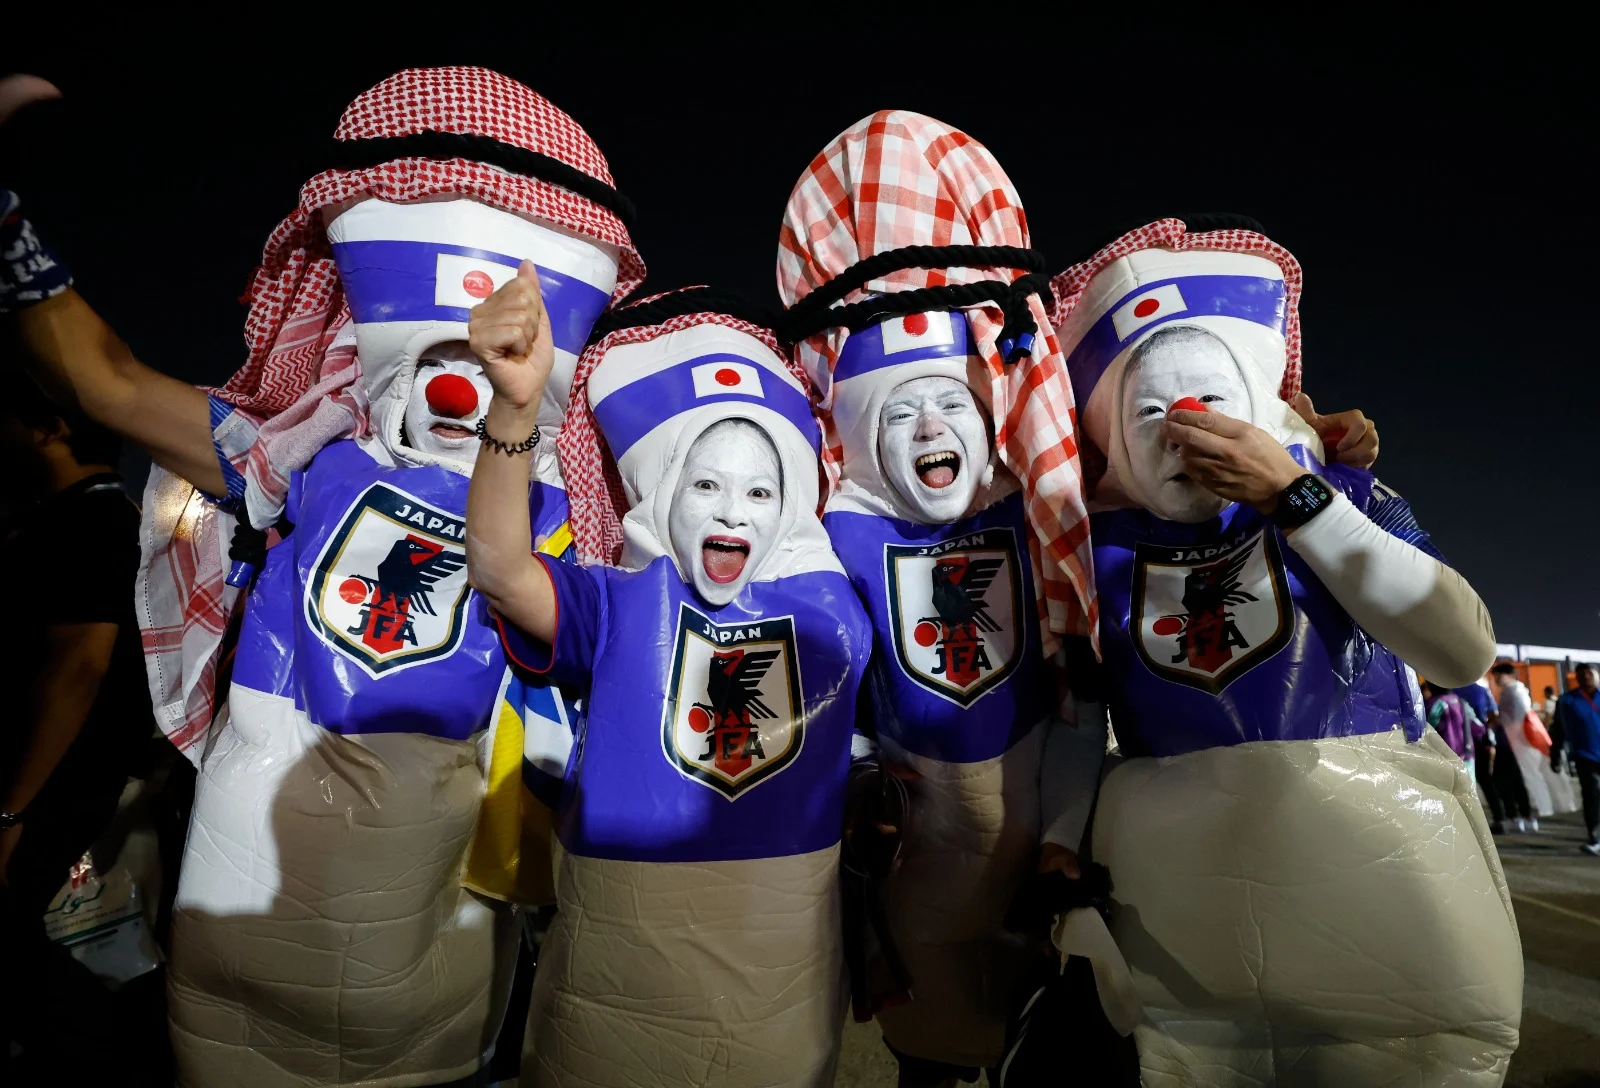 אוהדי נבחרת יפן חוגגים מונדיאל 2022 בקטר